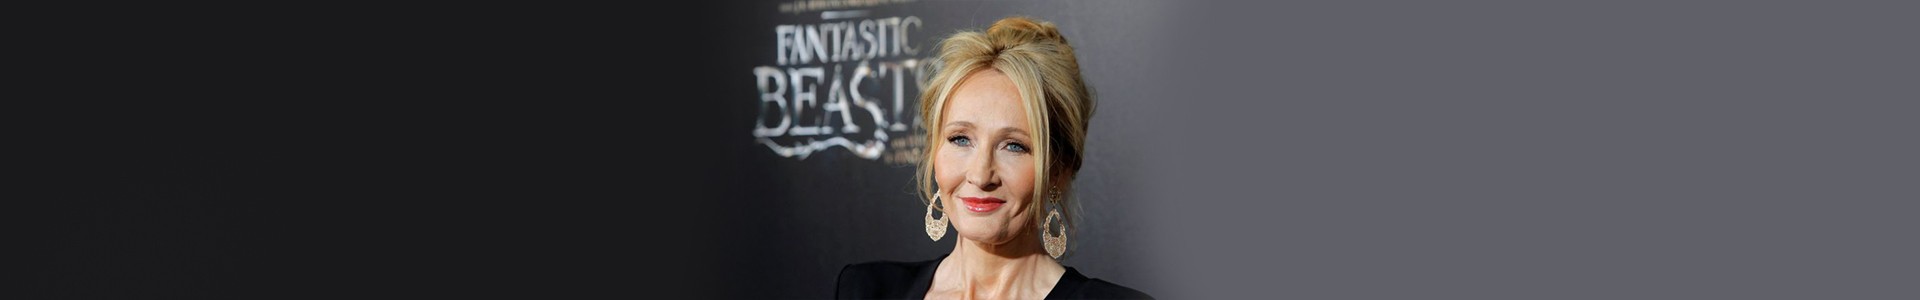 Será que J. K. Rowling realmente defendeu o Johnny Depp?